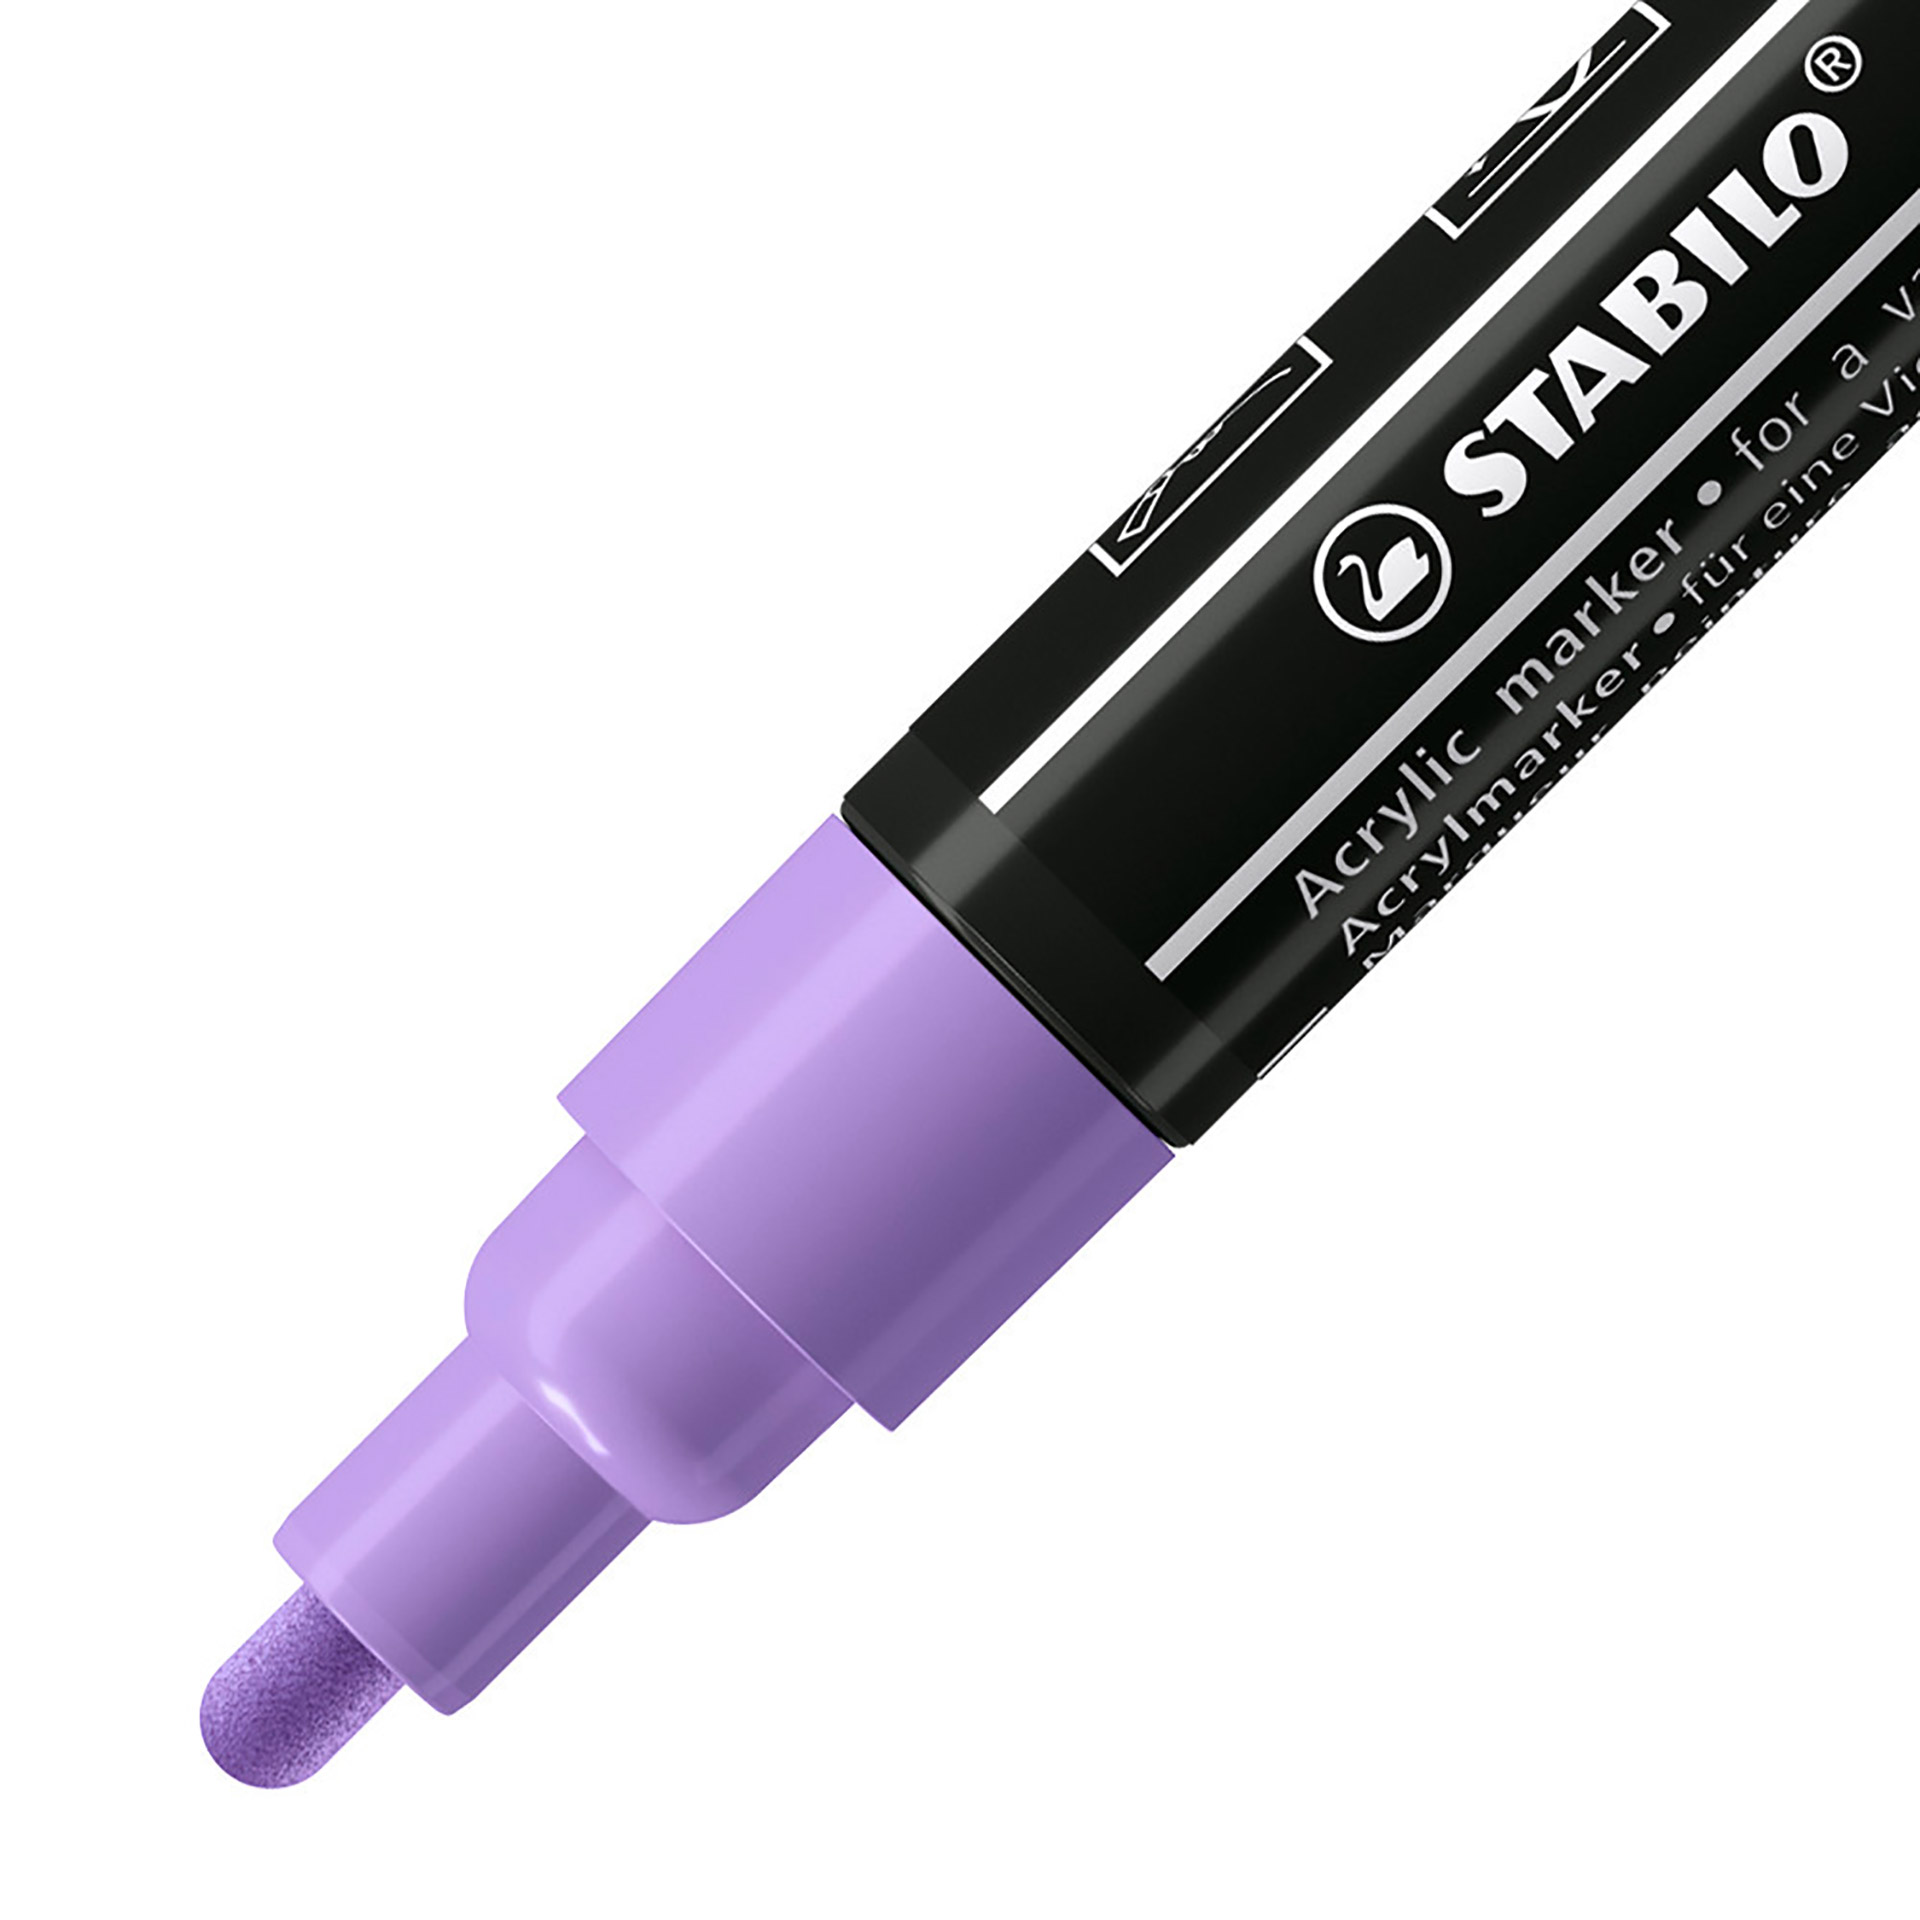 STABILO FREE Acrylic - T300 Punta rotonda 2-3mm - Confezione da 5 - Lilla chiaro, , large